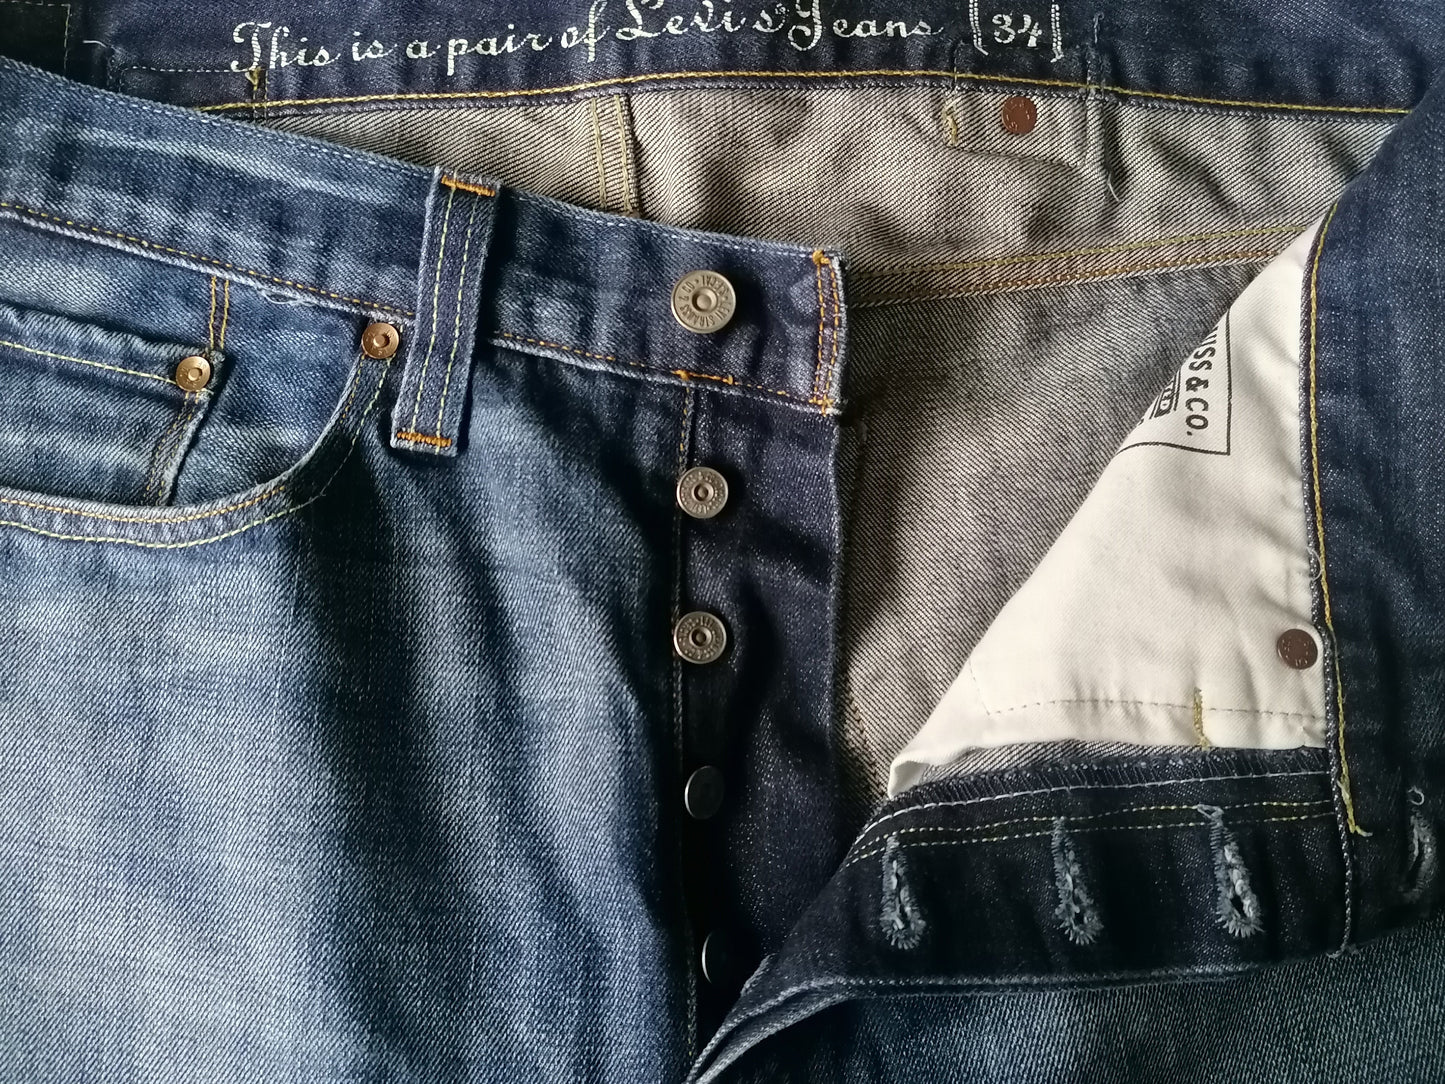 Jeans de Levi. Couleur bleue. W34 - L28.